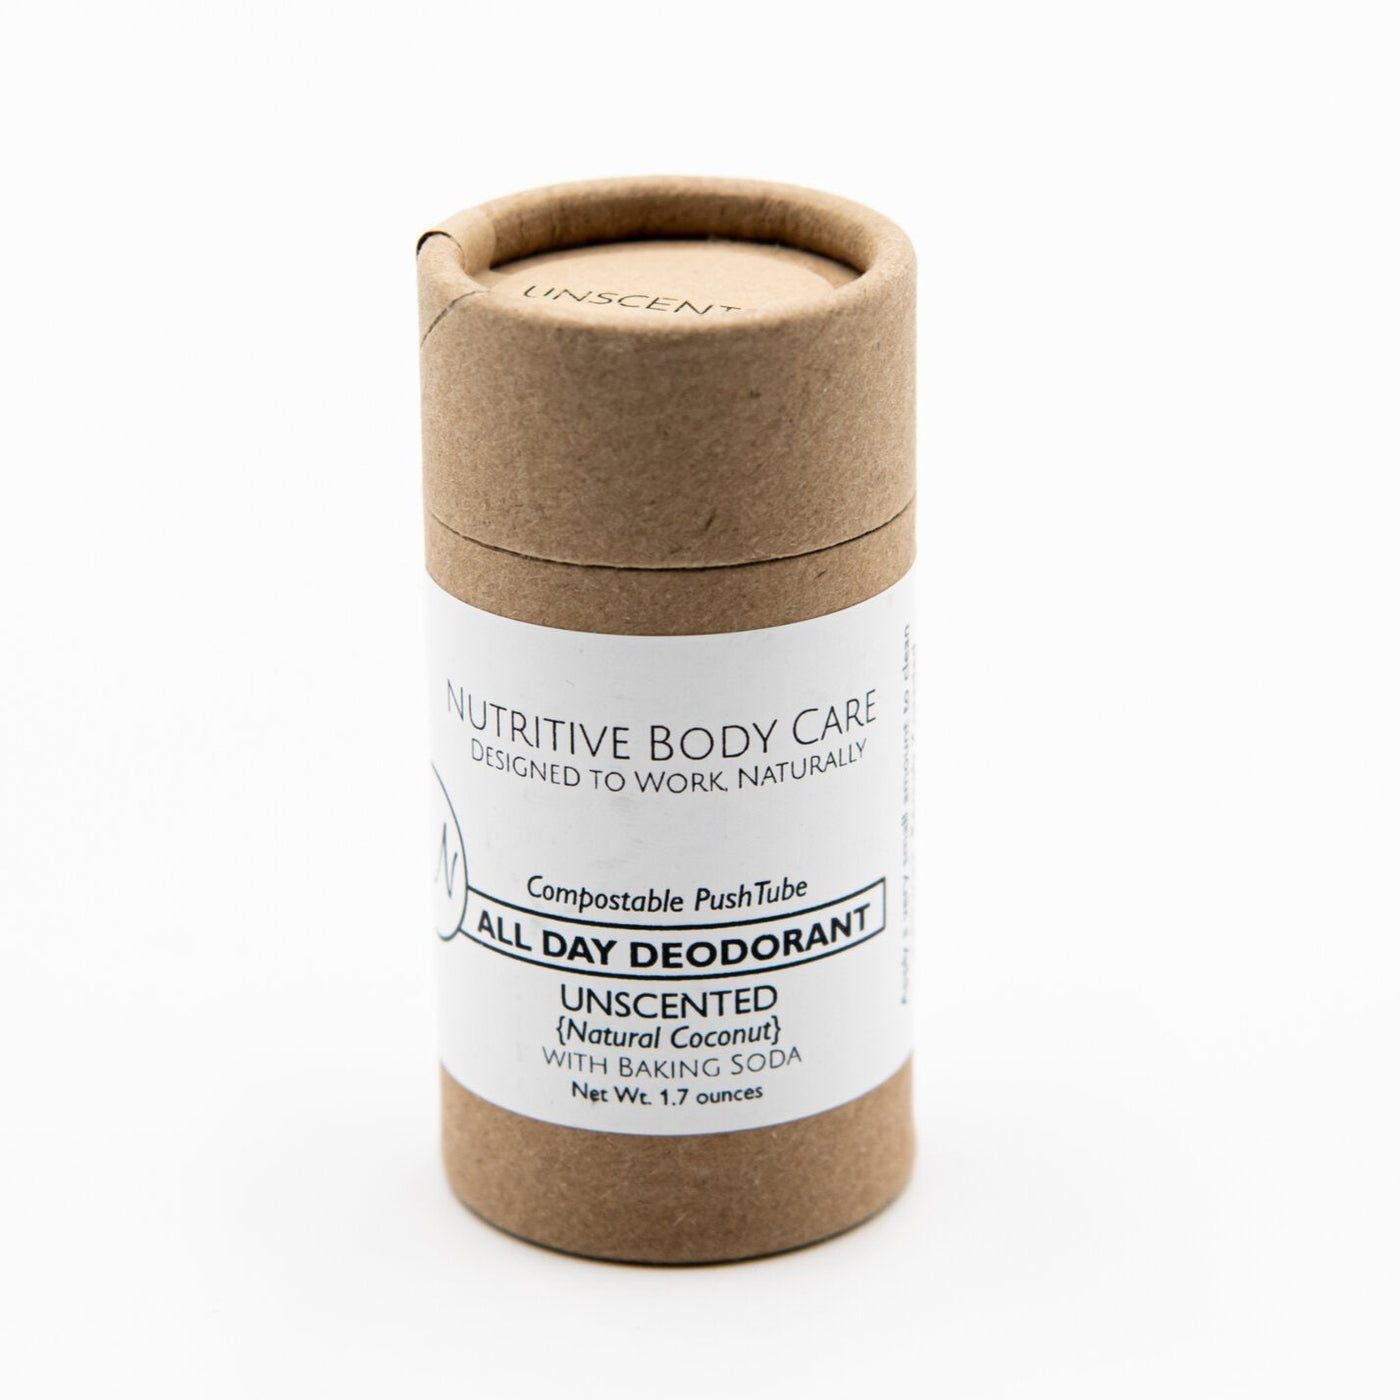 Nutritive Body Care Deodorant - Unscented